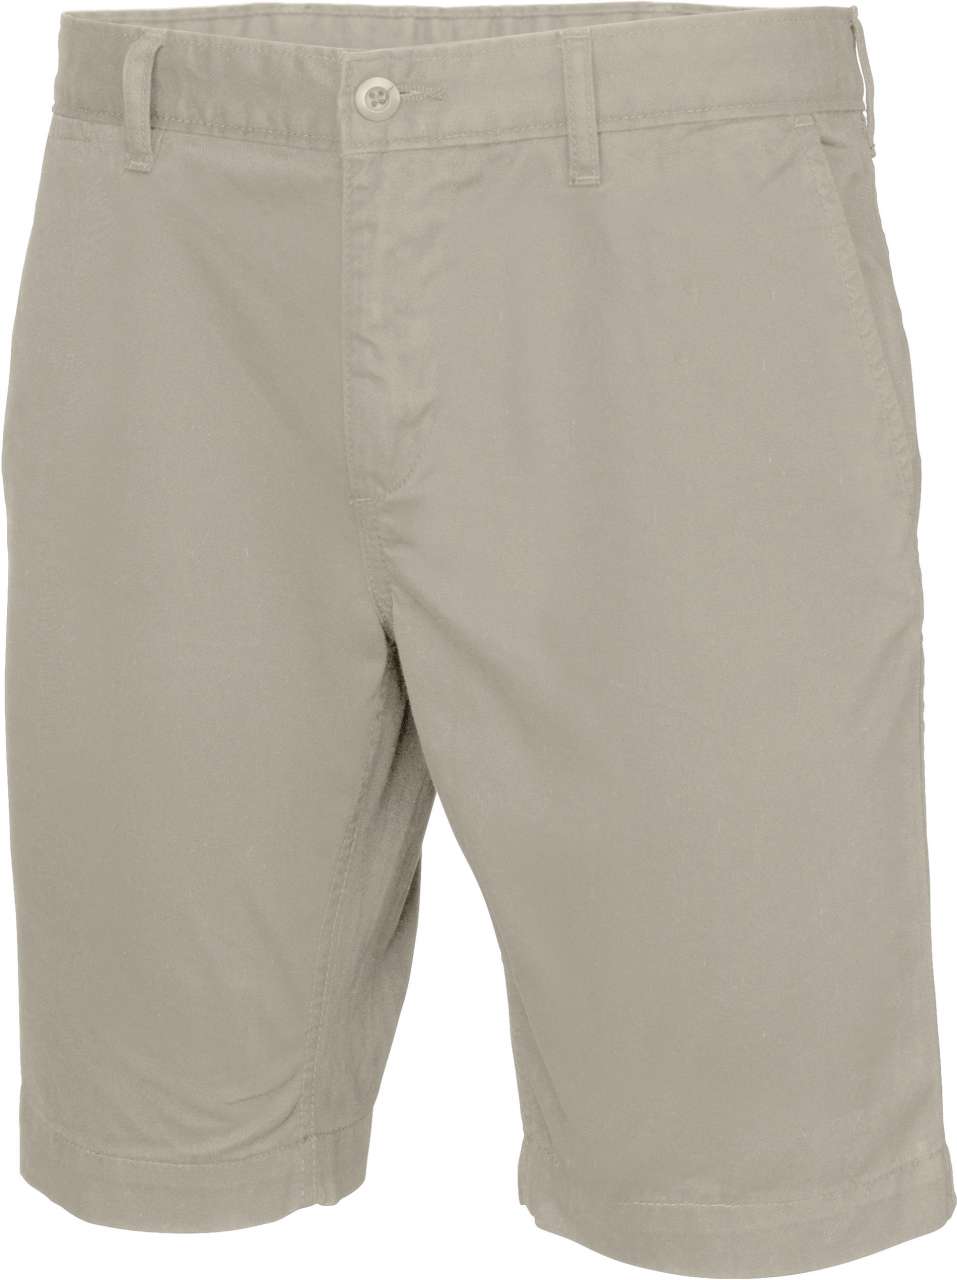 Pantaloni scurti pentru barbati confectionati din bumbac, cu doua buzunare laterale si doua la spate B522